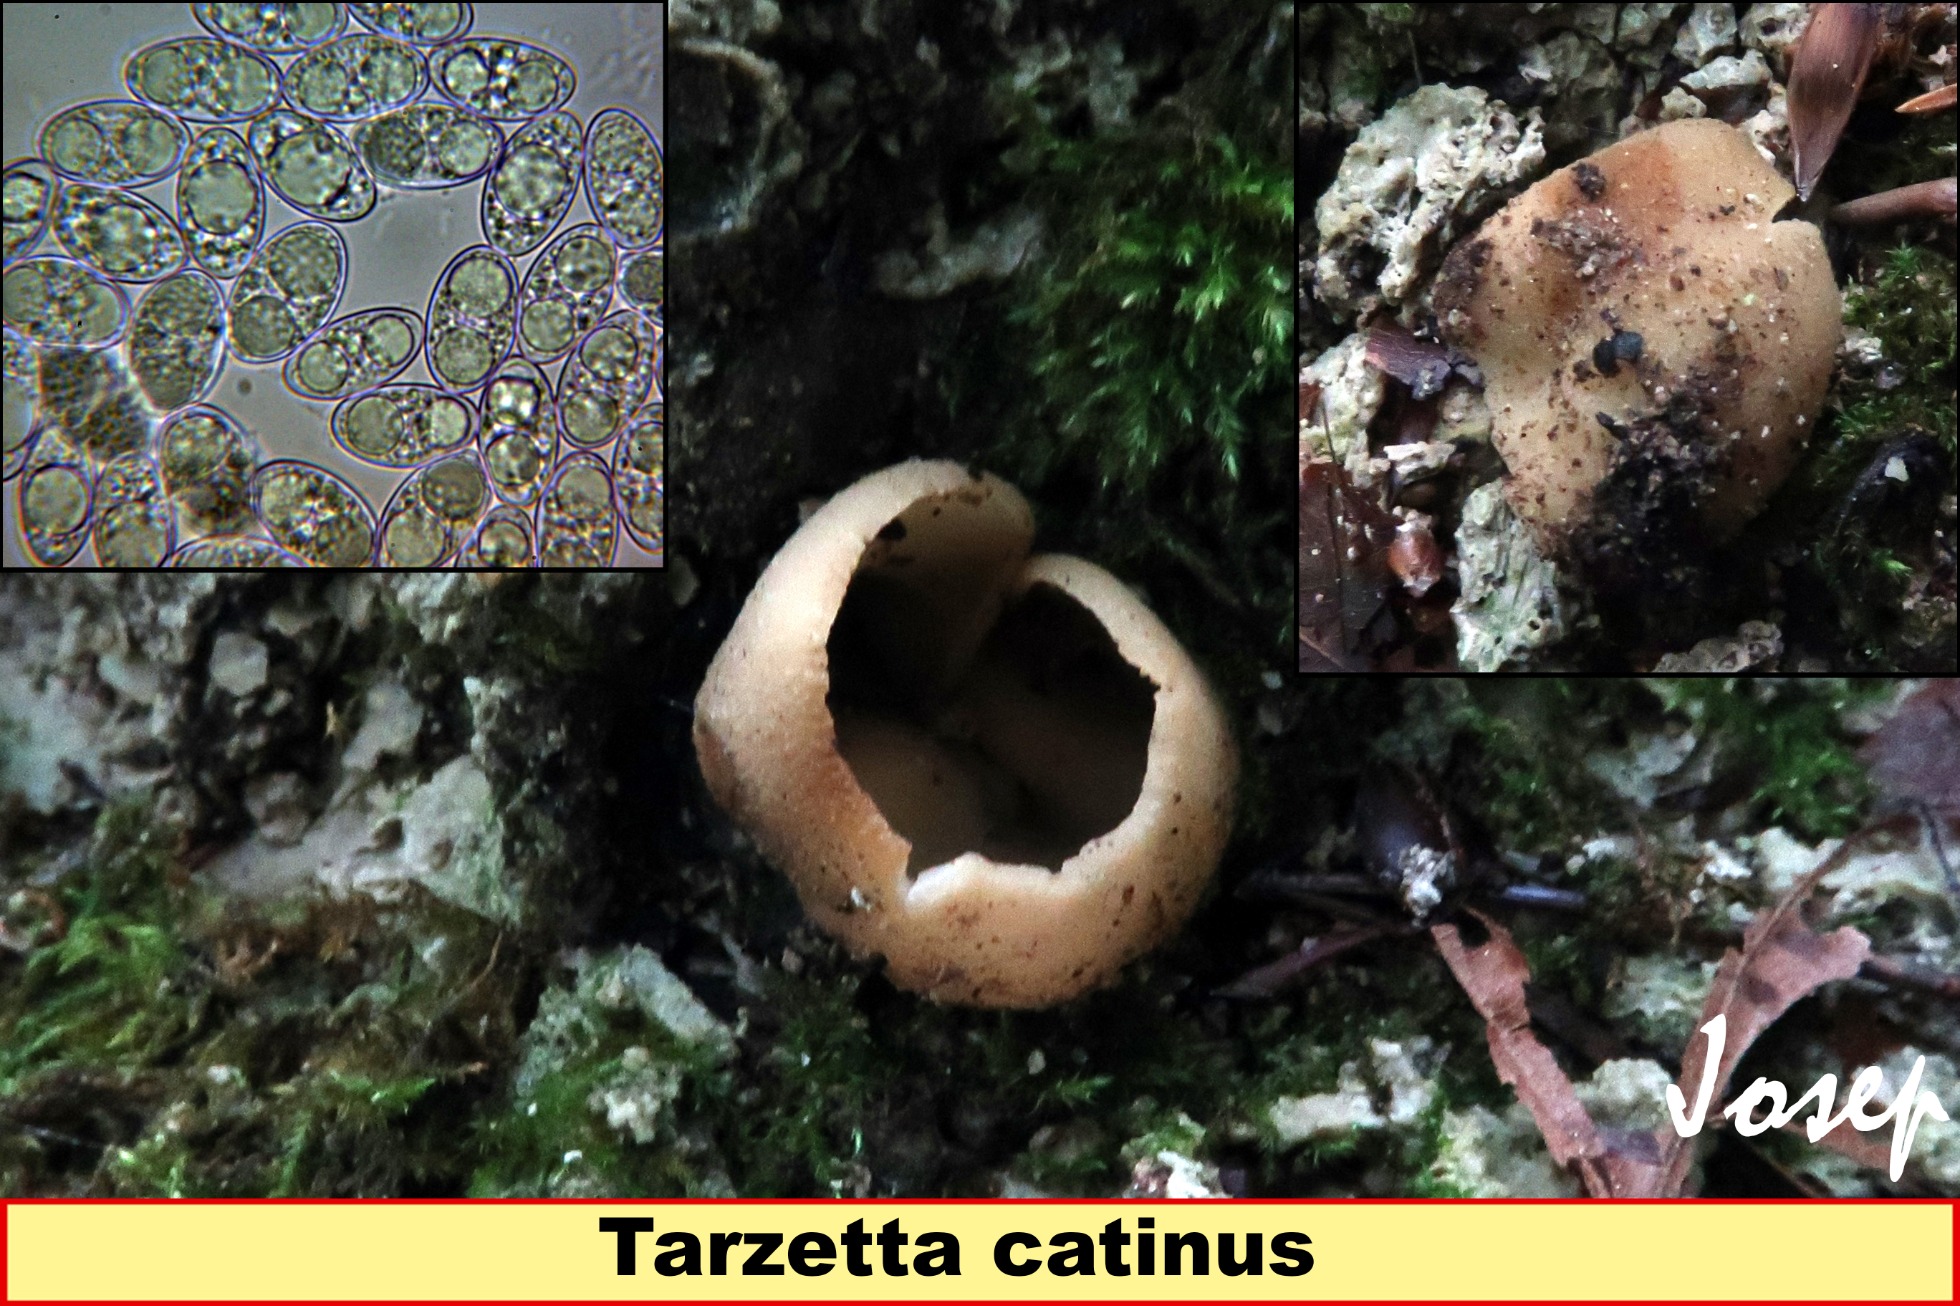 Tarzettacatinus_2021-05-05-2.jpg